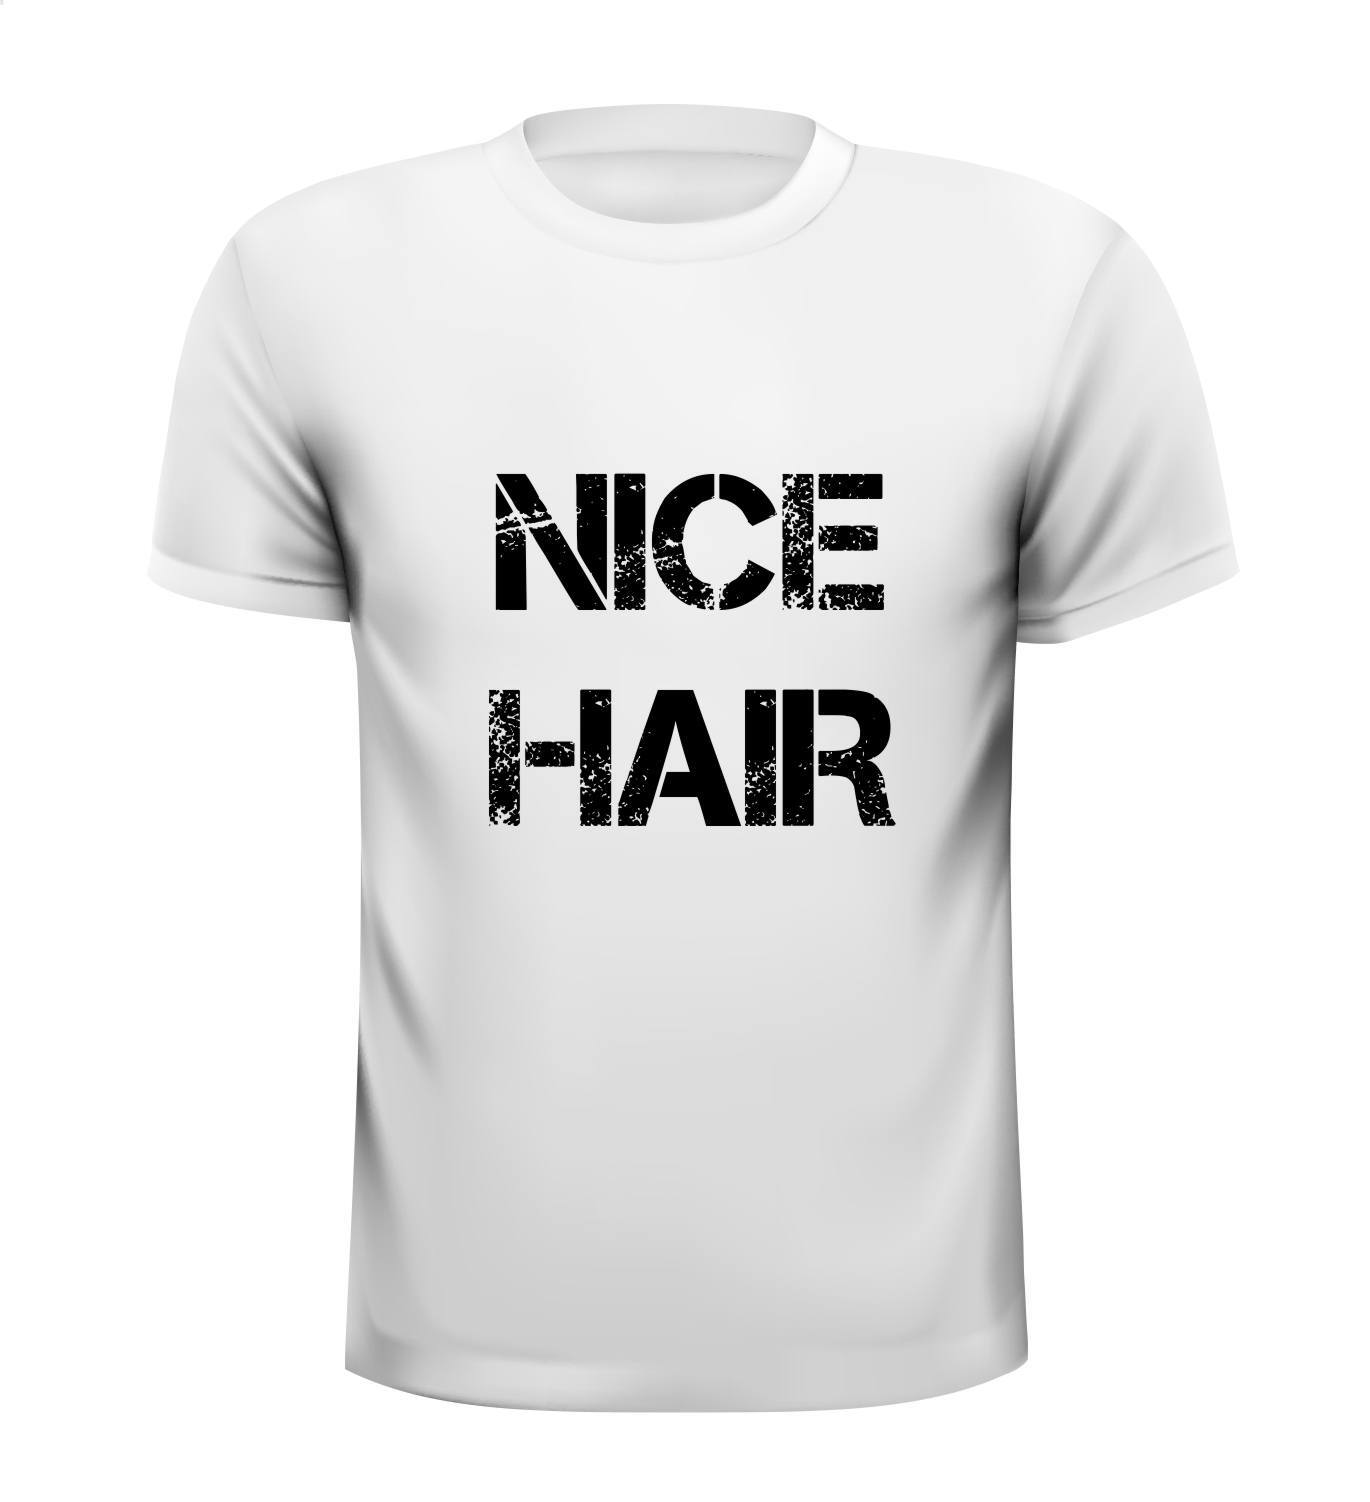 Nice hair T-shirt